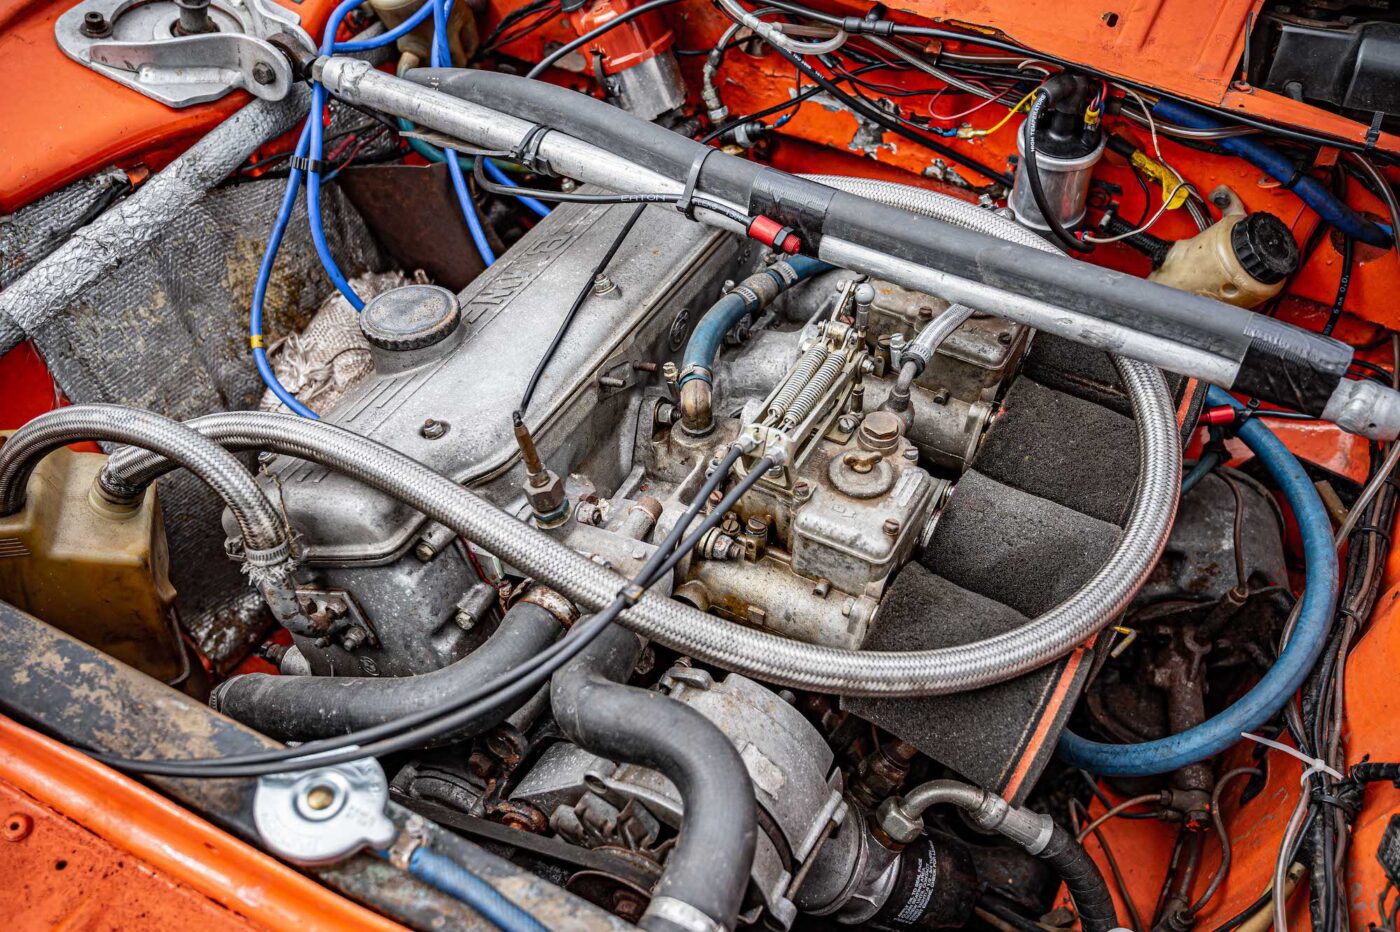 BMW 2002tii engine